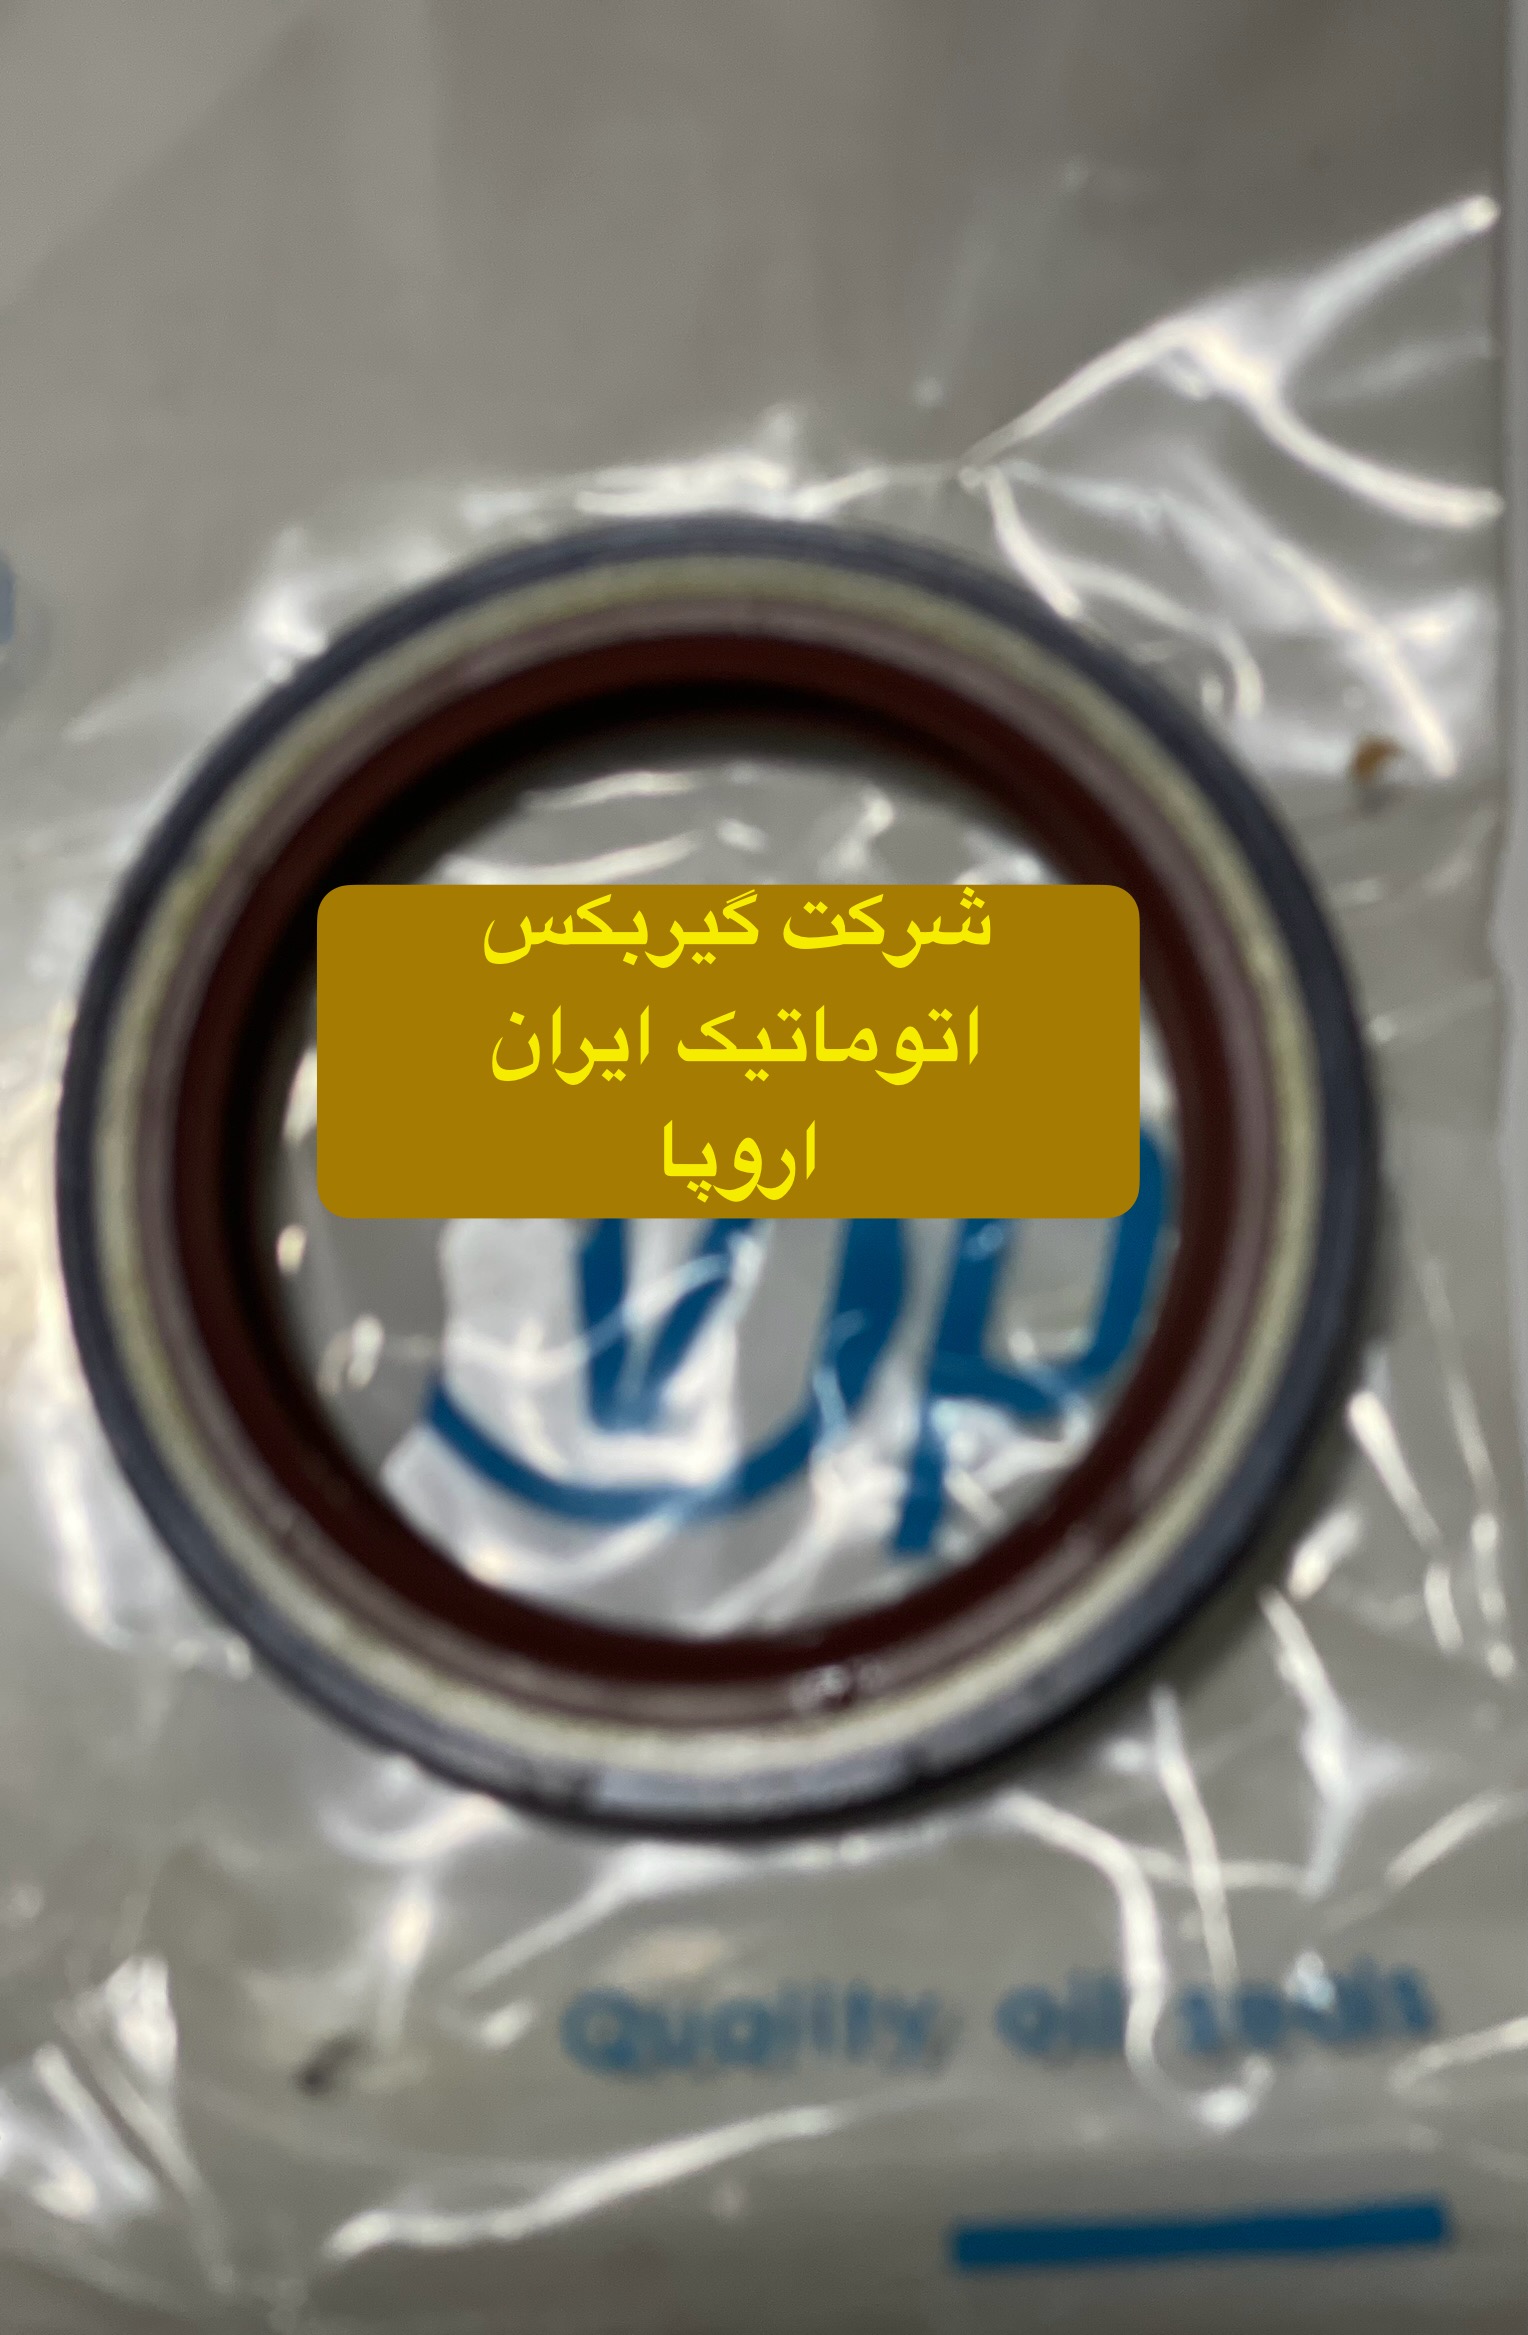 فروش تک و عمده کاسه نمد توربین گیربکس های اتوماتیک پژو 206 در تعمیرگاه گیربکس اتوماتیک ایران اروپا 